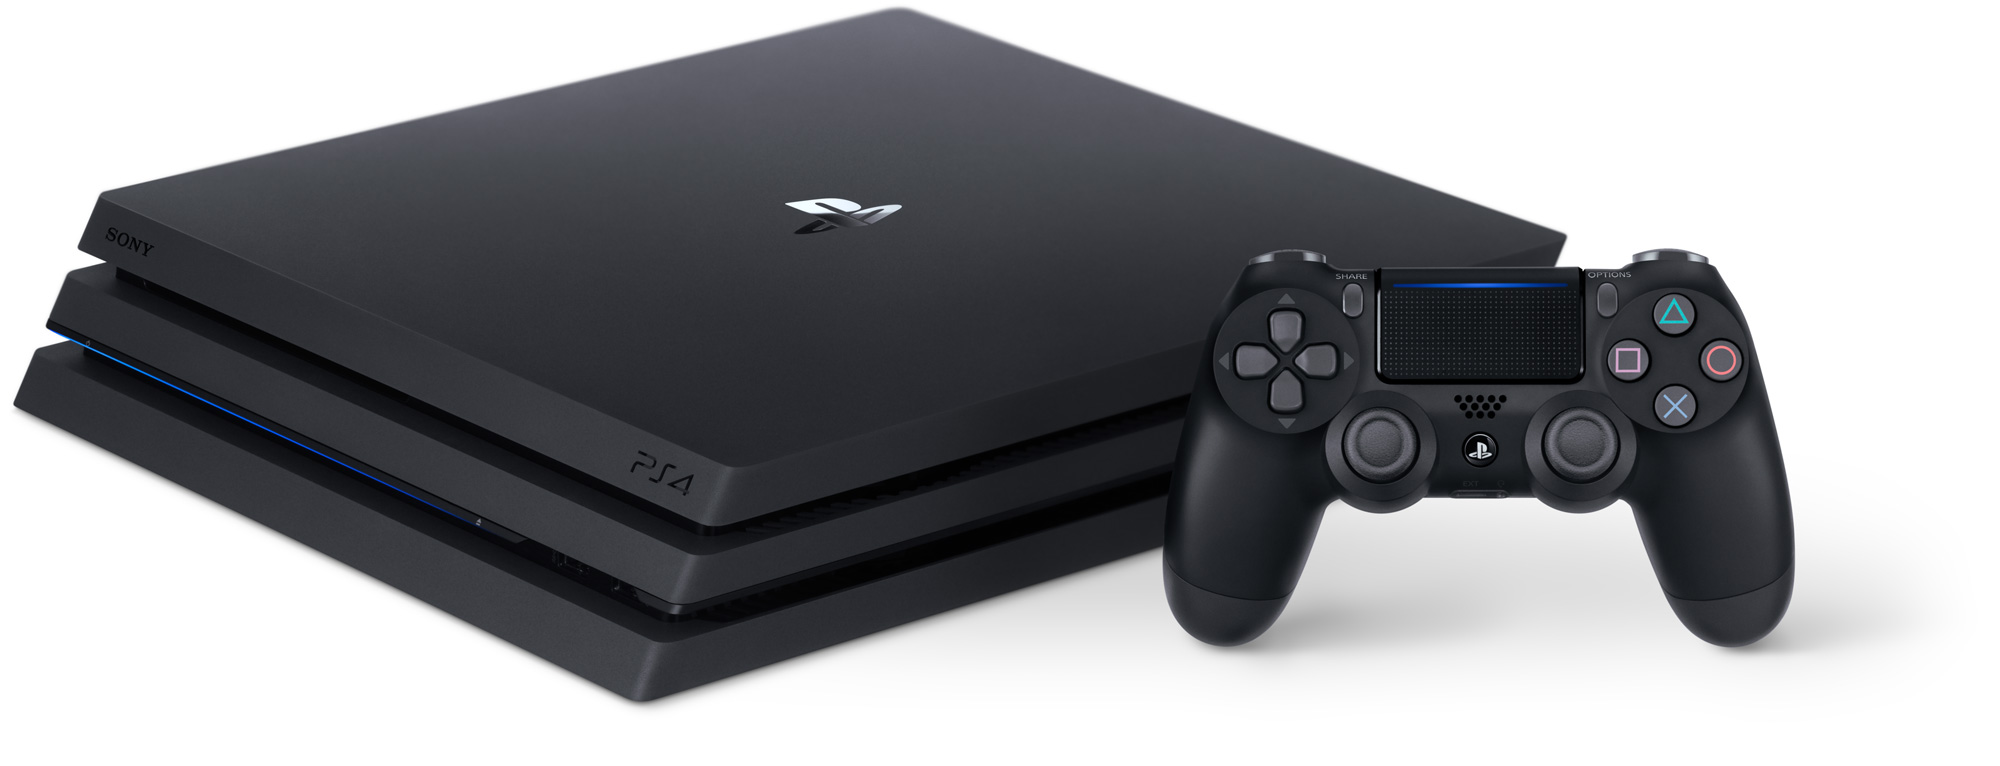 57845 21 playstation discrete gpu apu สาวกคอนโซลเตรียมตัว!! นักวิเคราะห์มอง PlayStation 5 น่าจะมาในปี 2020 นี้ 